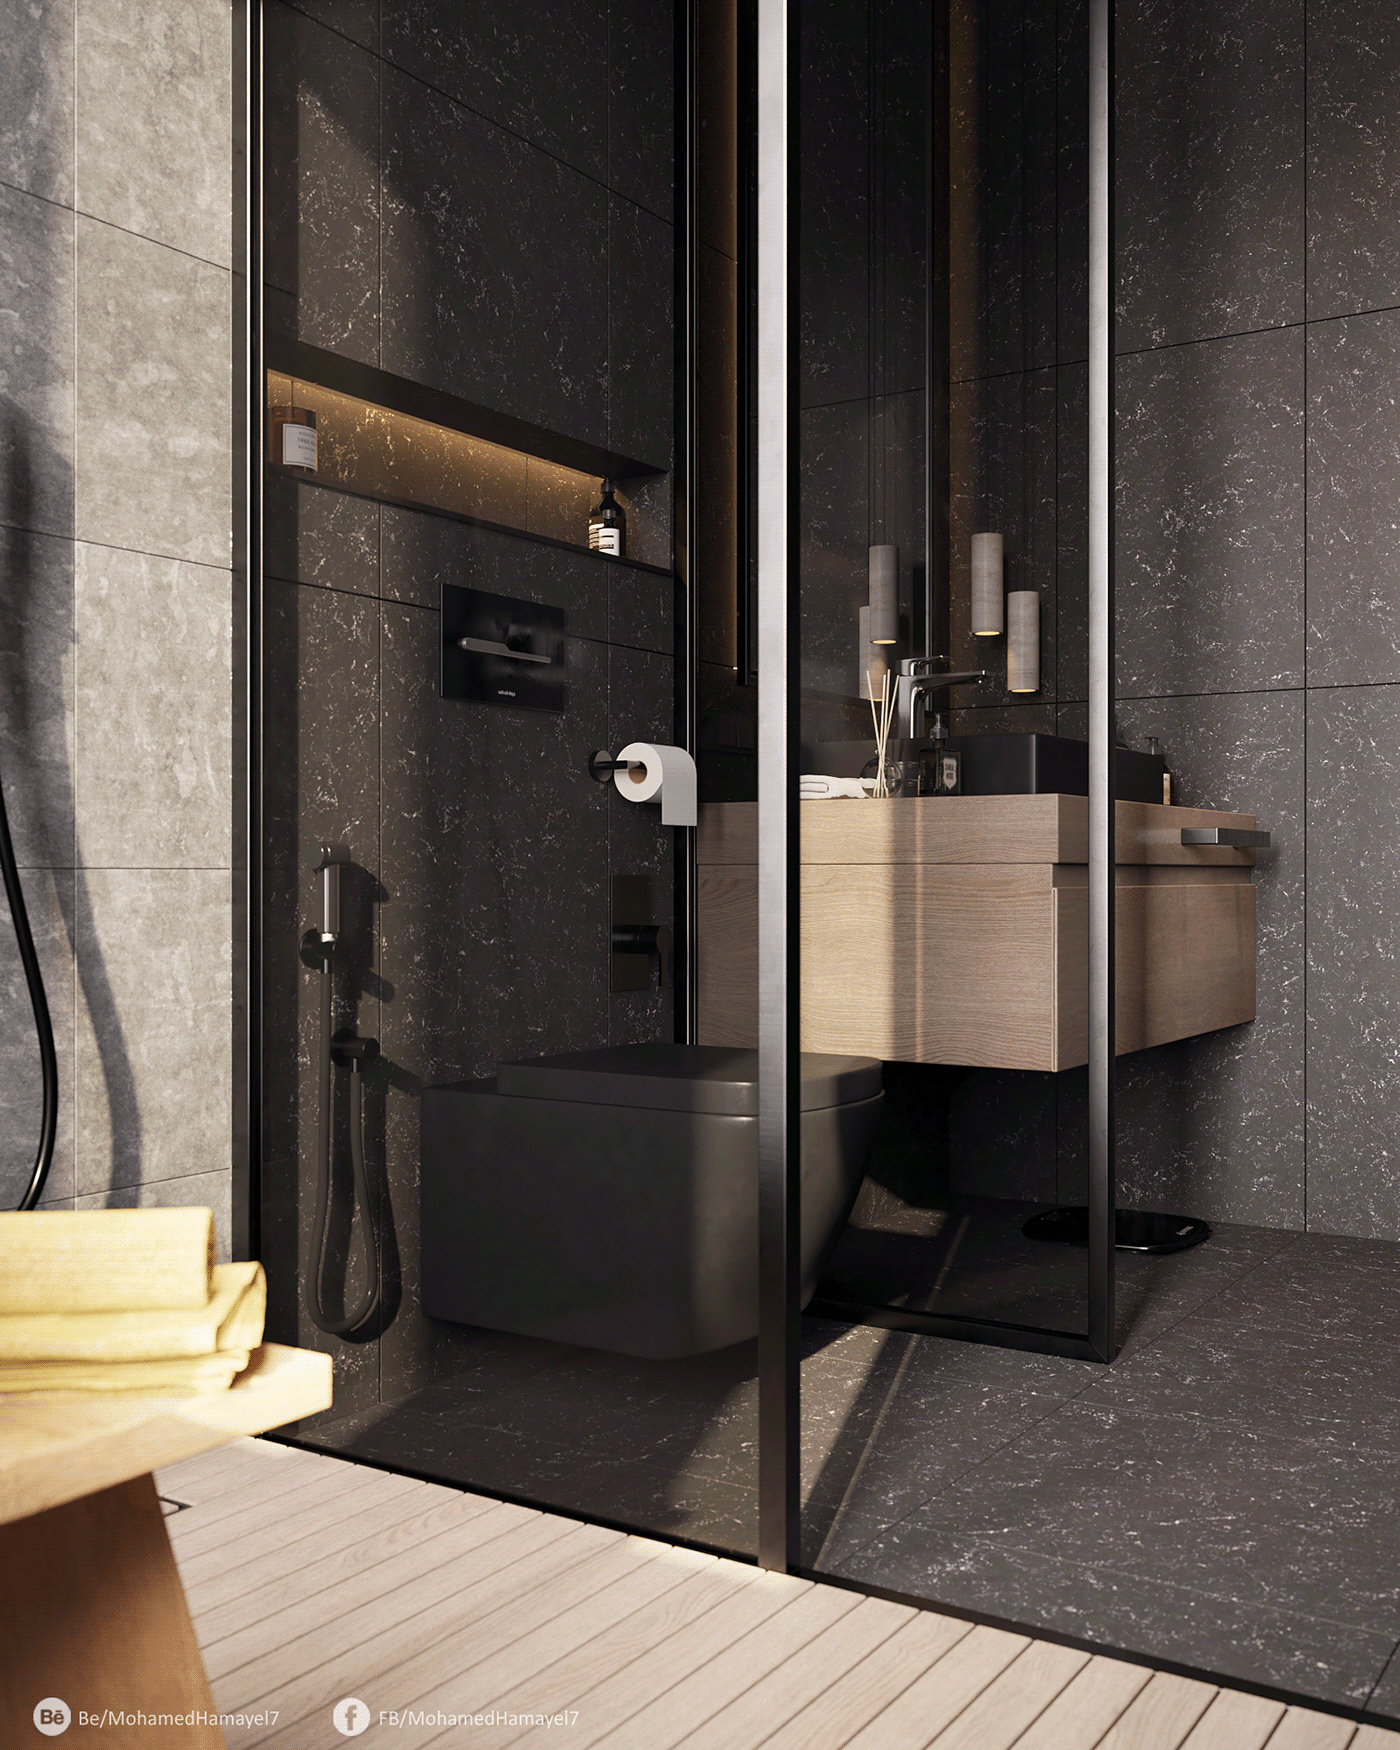 architecture archviz bathroom bedroom CG interior design  kitchen Photography  Render visualization